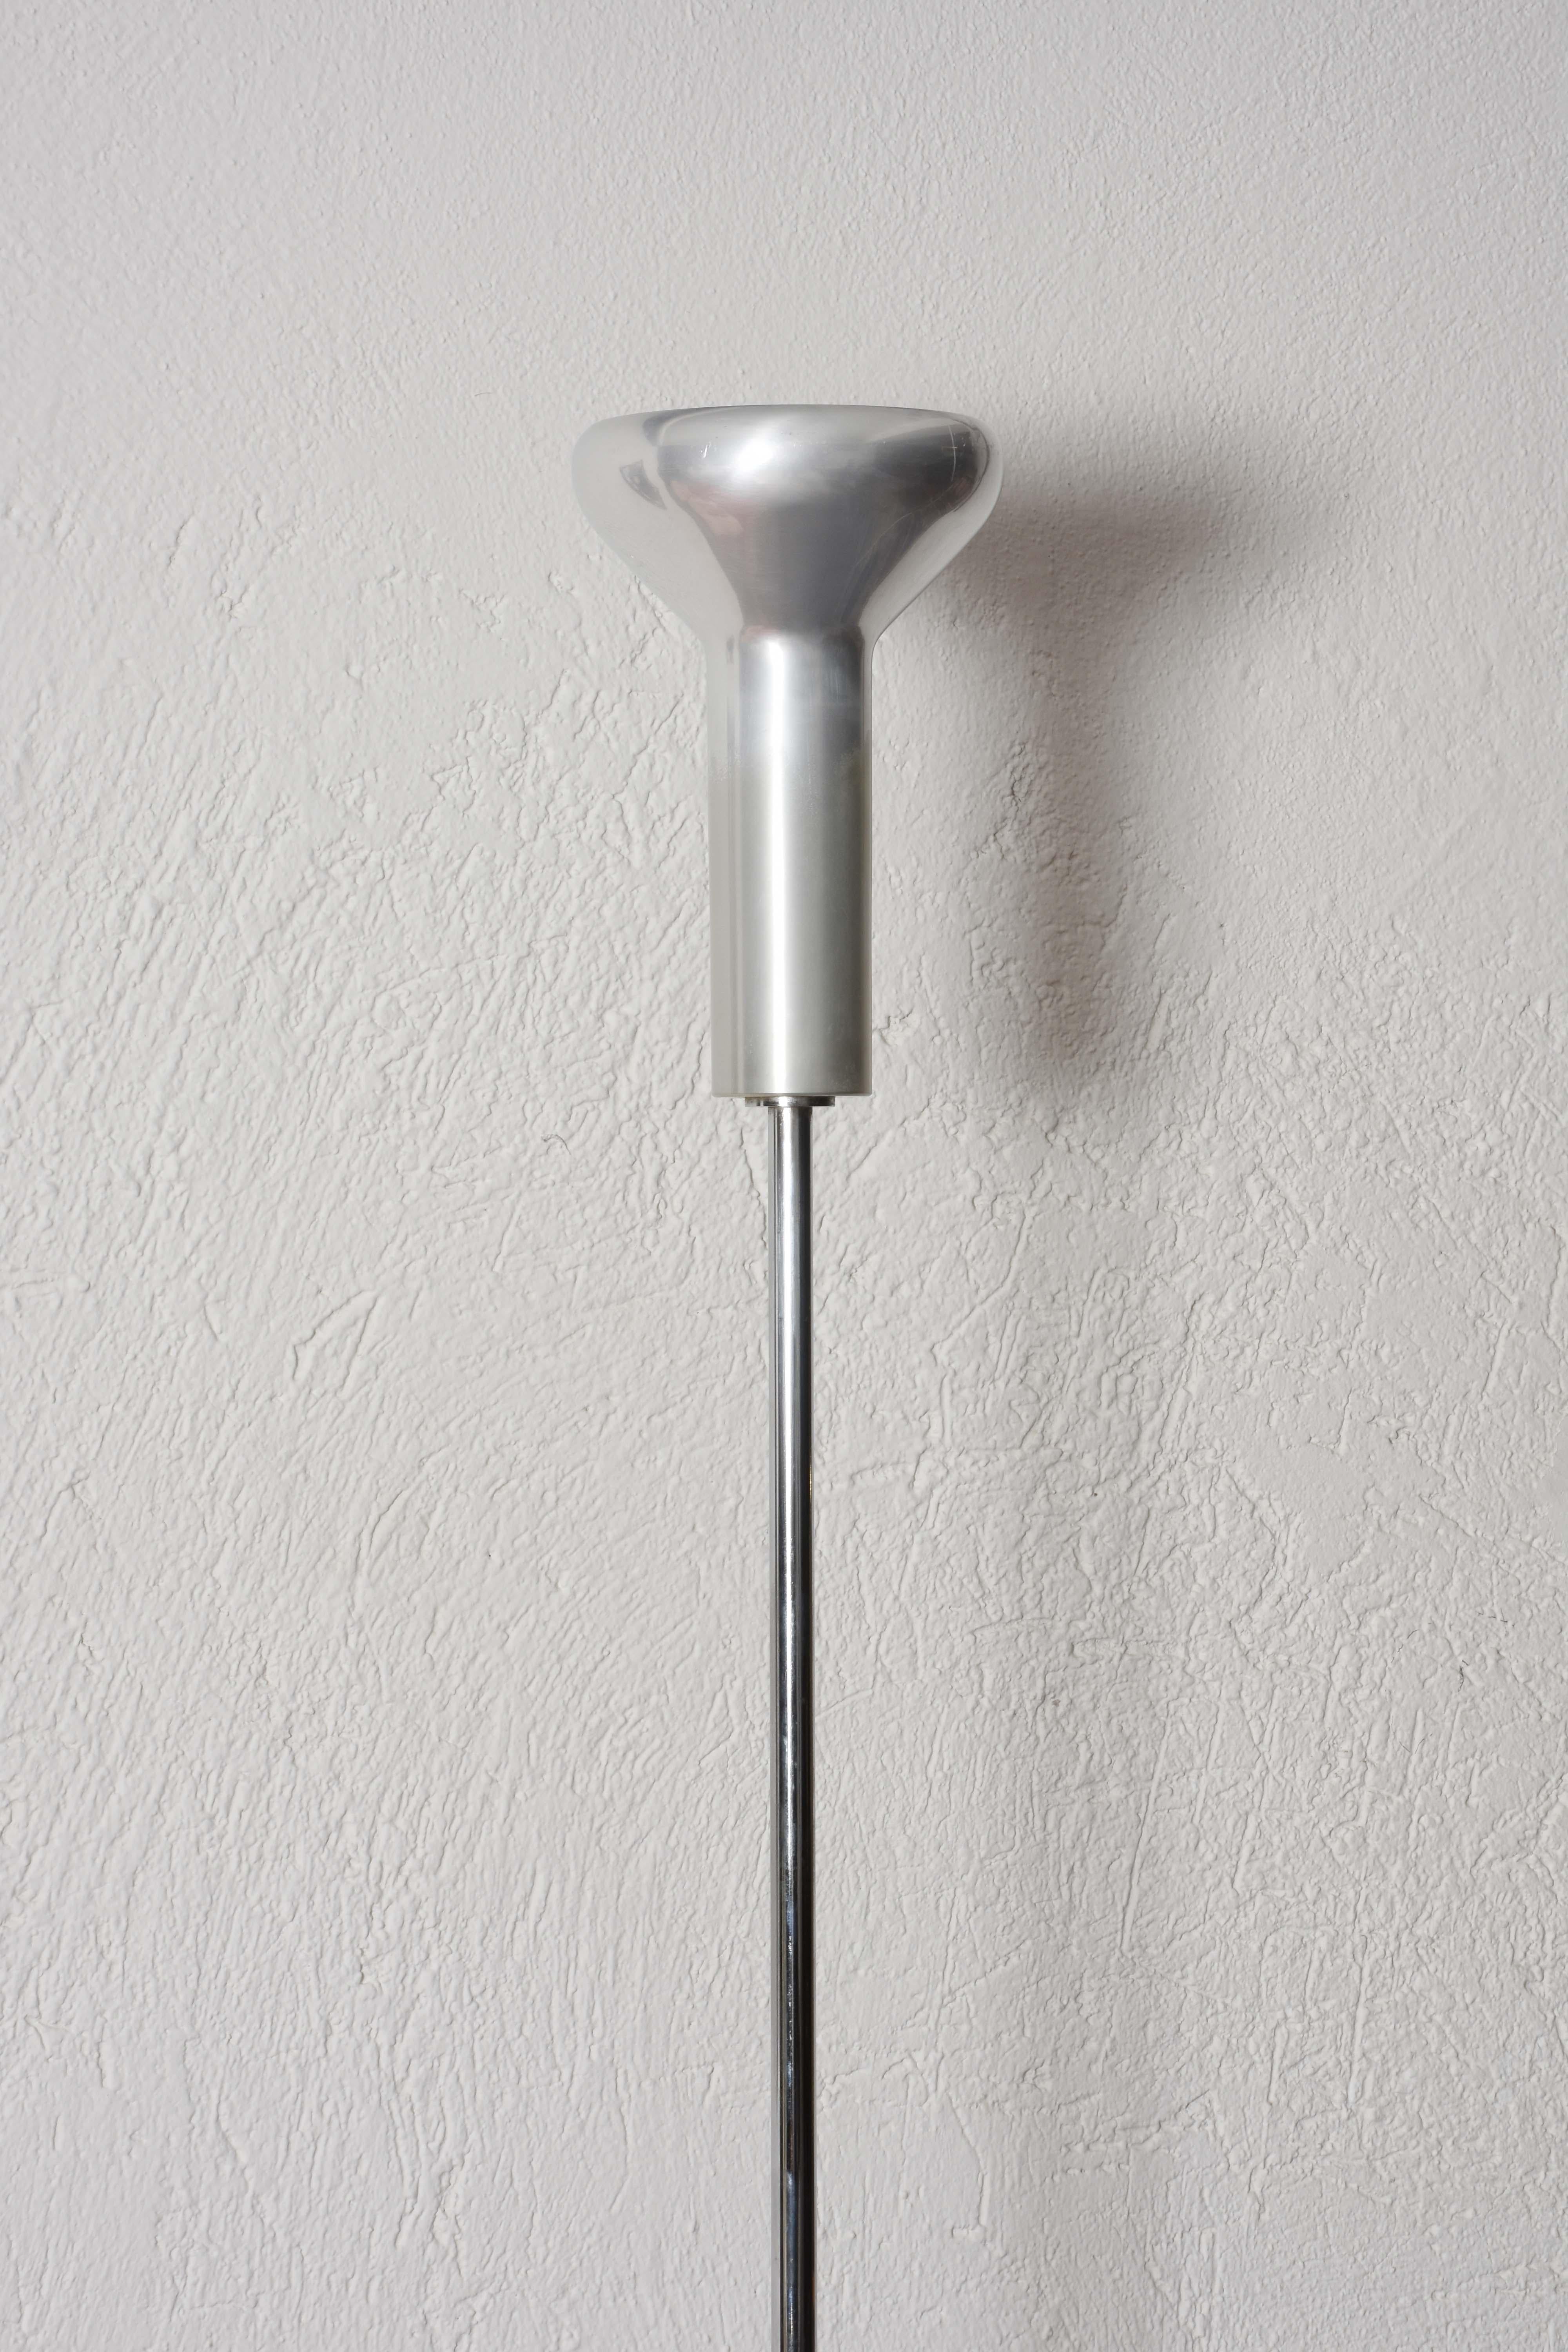 Metal Midcentury Gino Sarfatti Chrome Aluminum Italian 1073 Floor Lamp, Arteluce 1950s